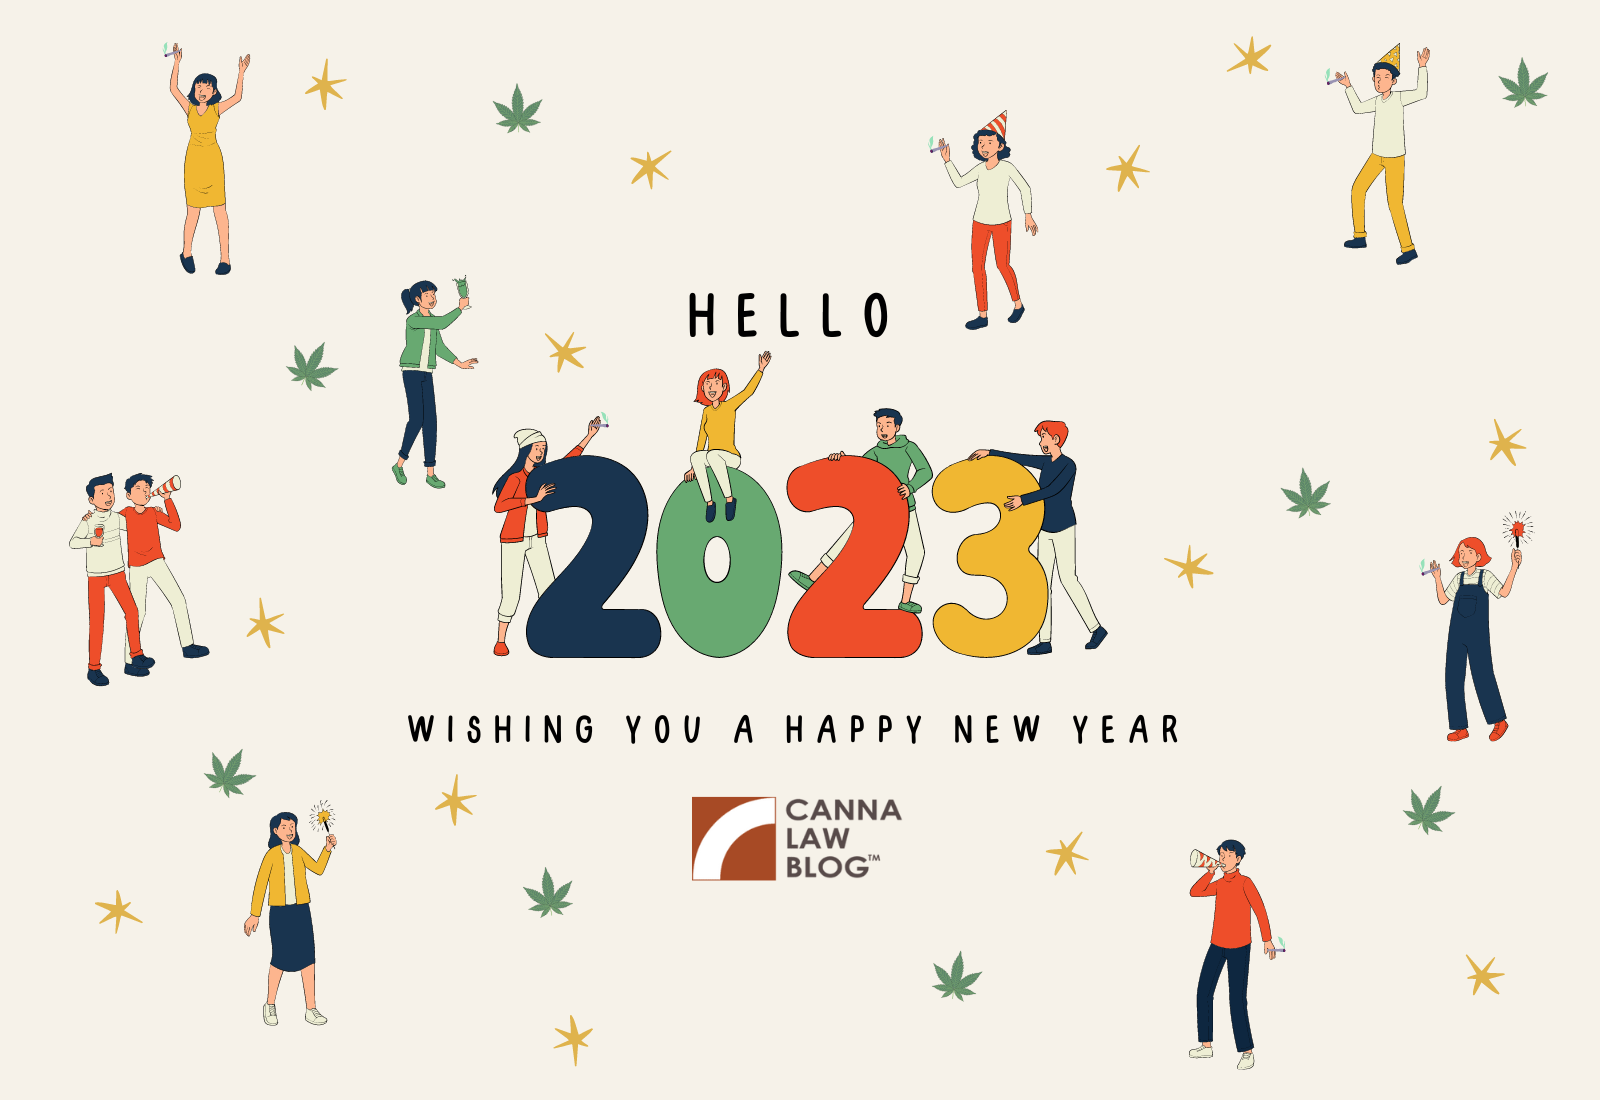 ¡Feliz año nuevo desde Canna Law Blog!